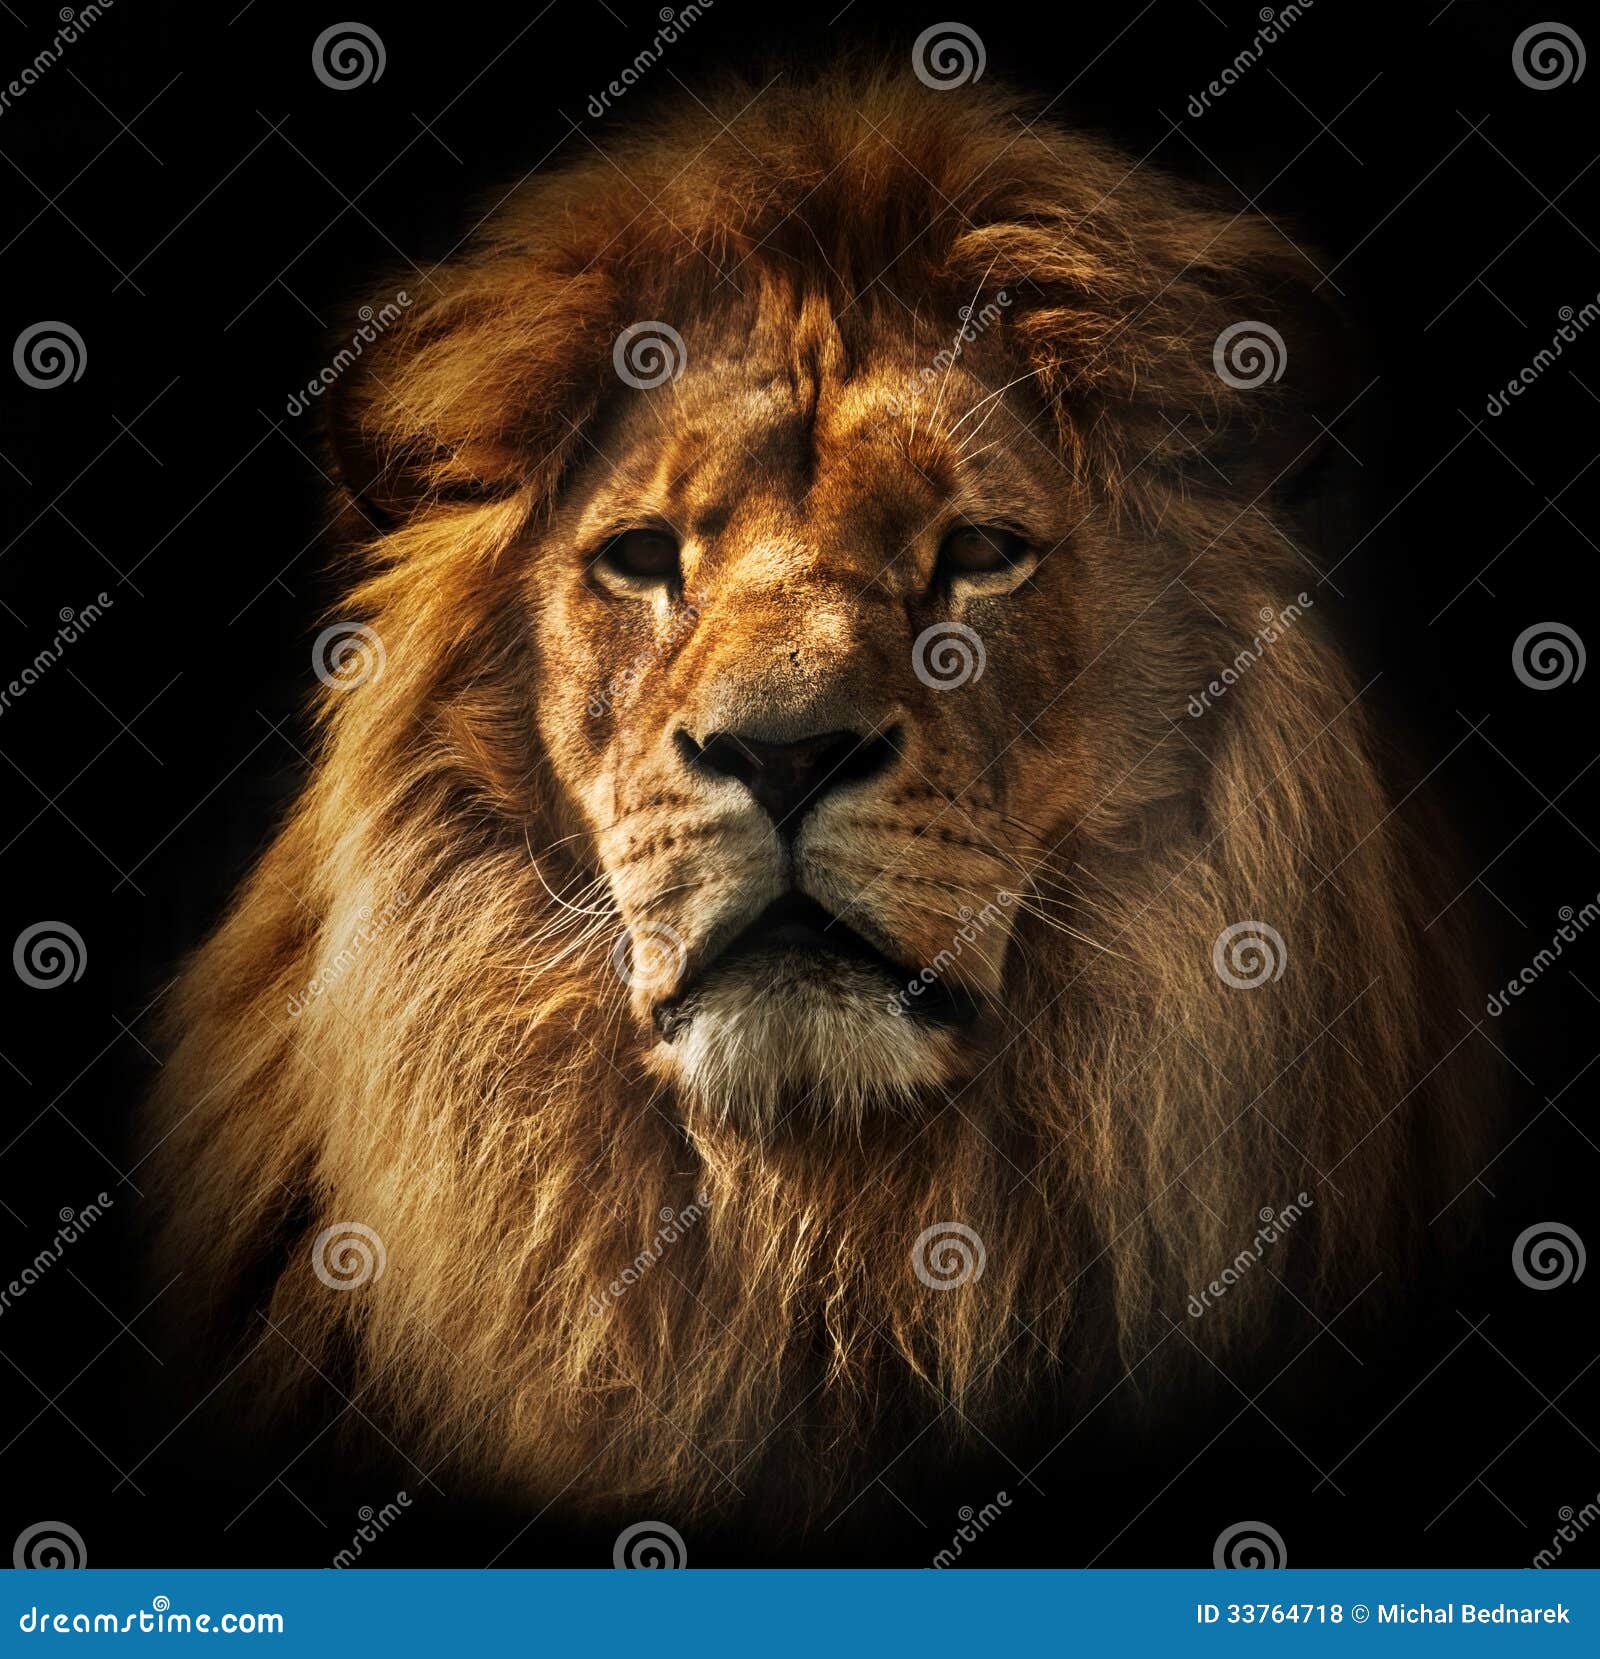 lion portrait with rich mane on black